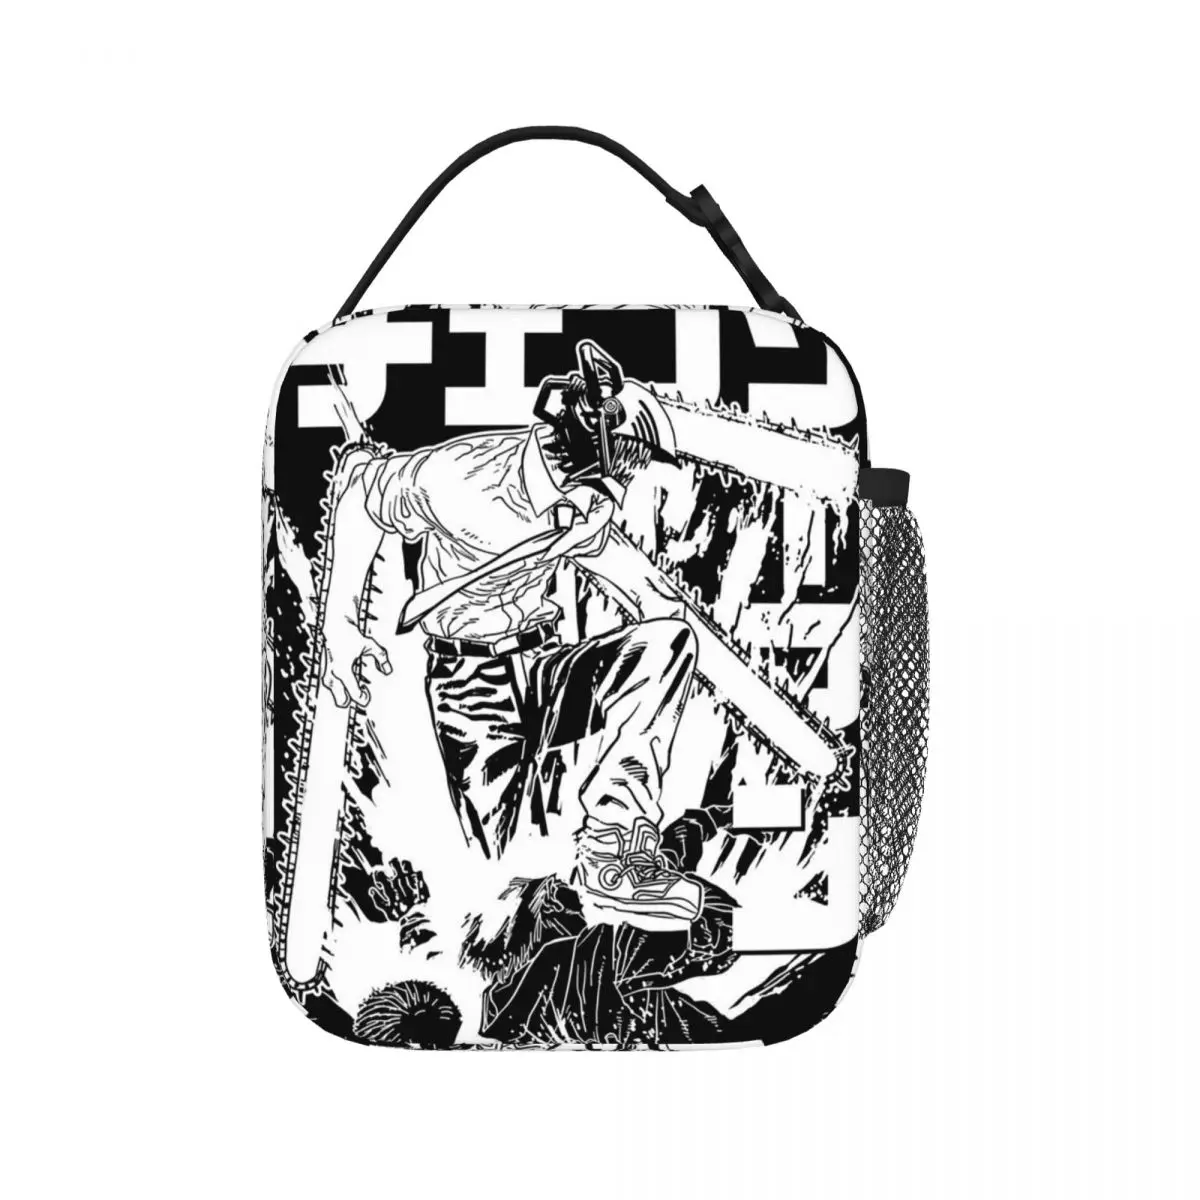 

Сумка для ланча Warrior с Бензопилой, изолированная водонепроницаемая сумка-тоут для еды, герметичные сумки для пикника для женщин, работы, школы, детей